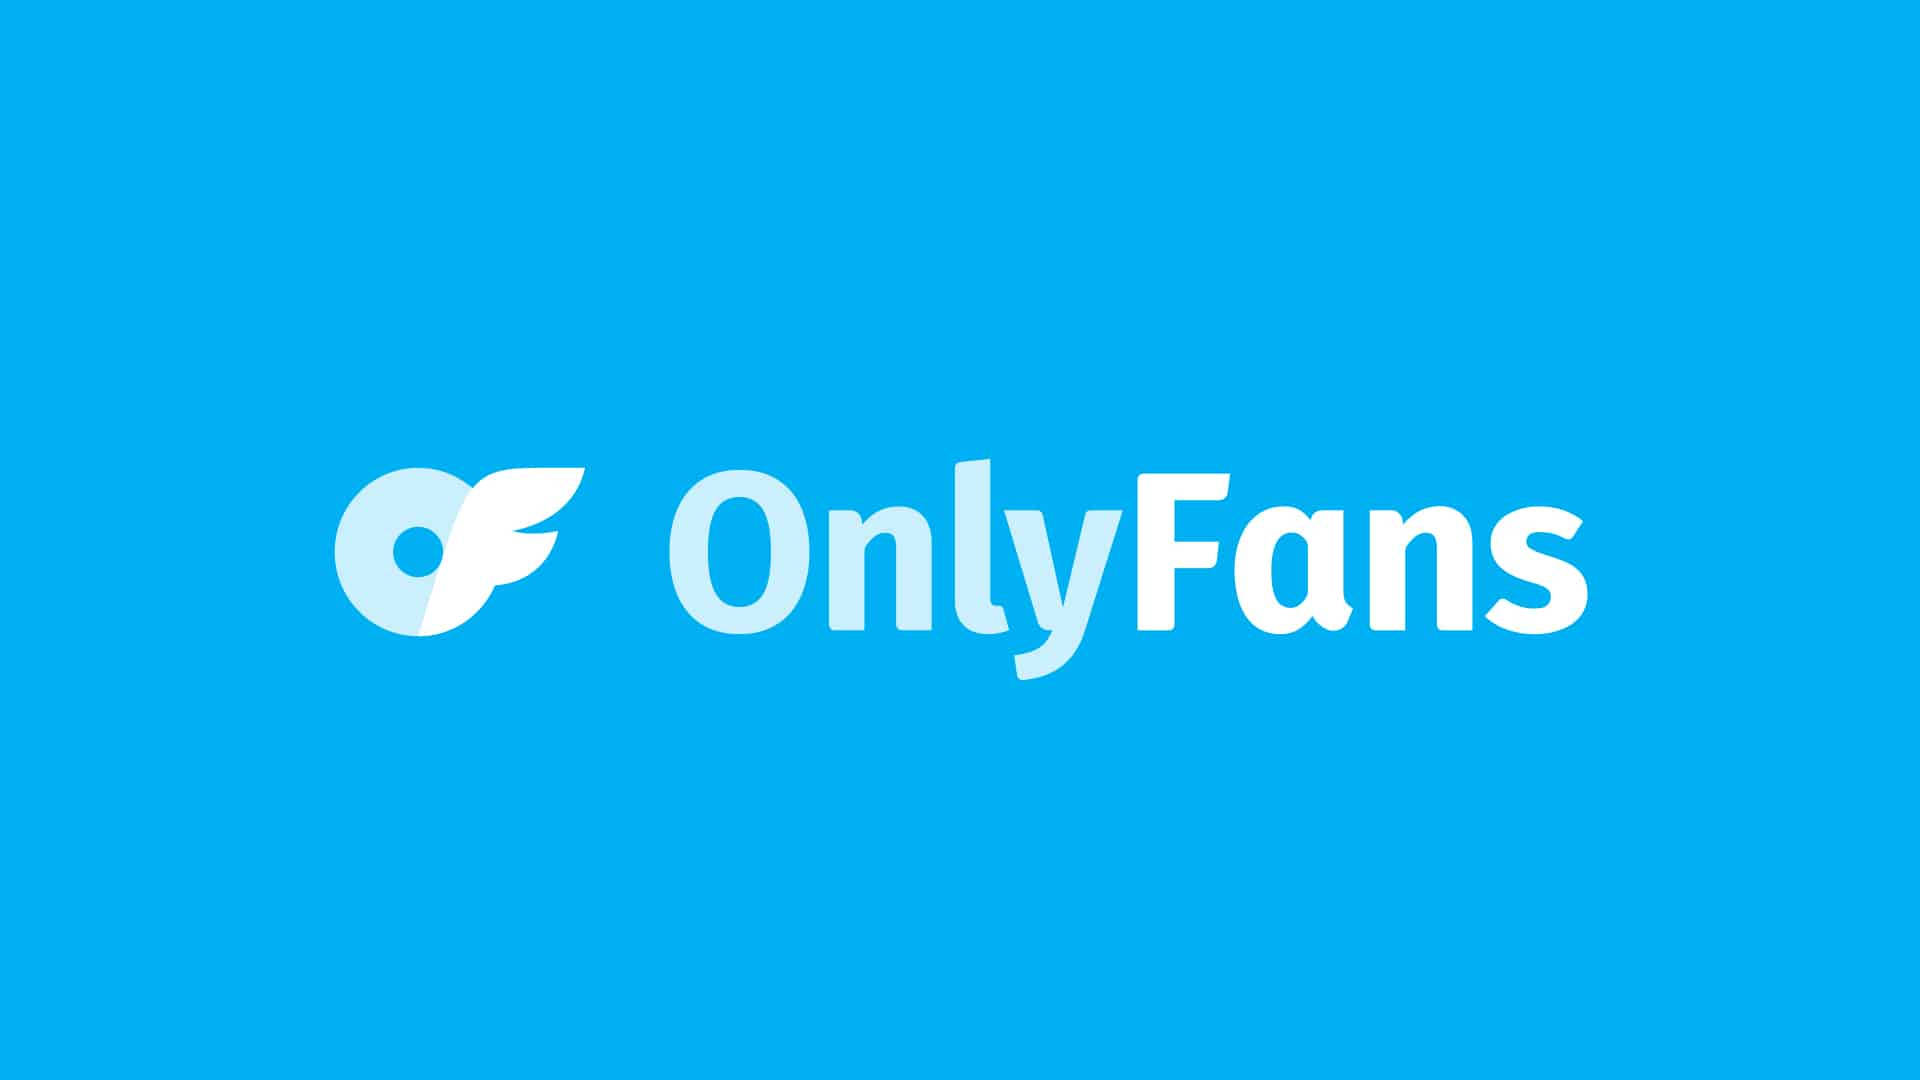 Logotipode Onlyfans En Azul. Fondo de pantalla